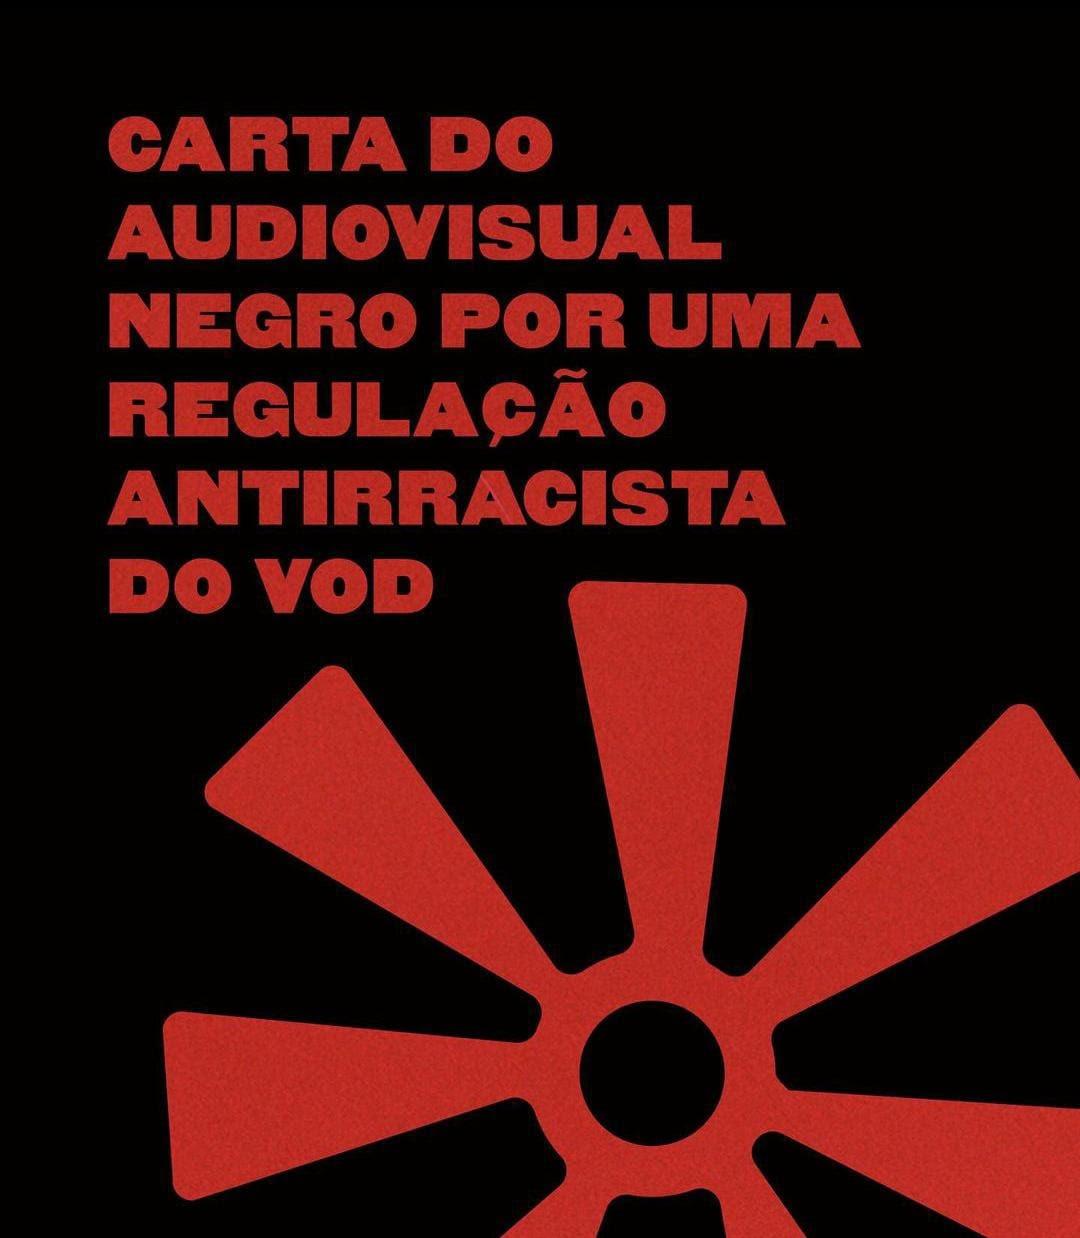 Cinema negro é cinema brasileiro: APAN divulga carta para regulação antirracista do VoD